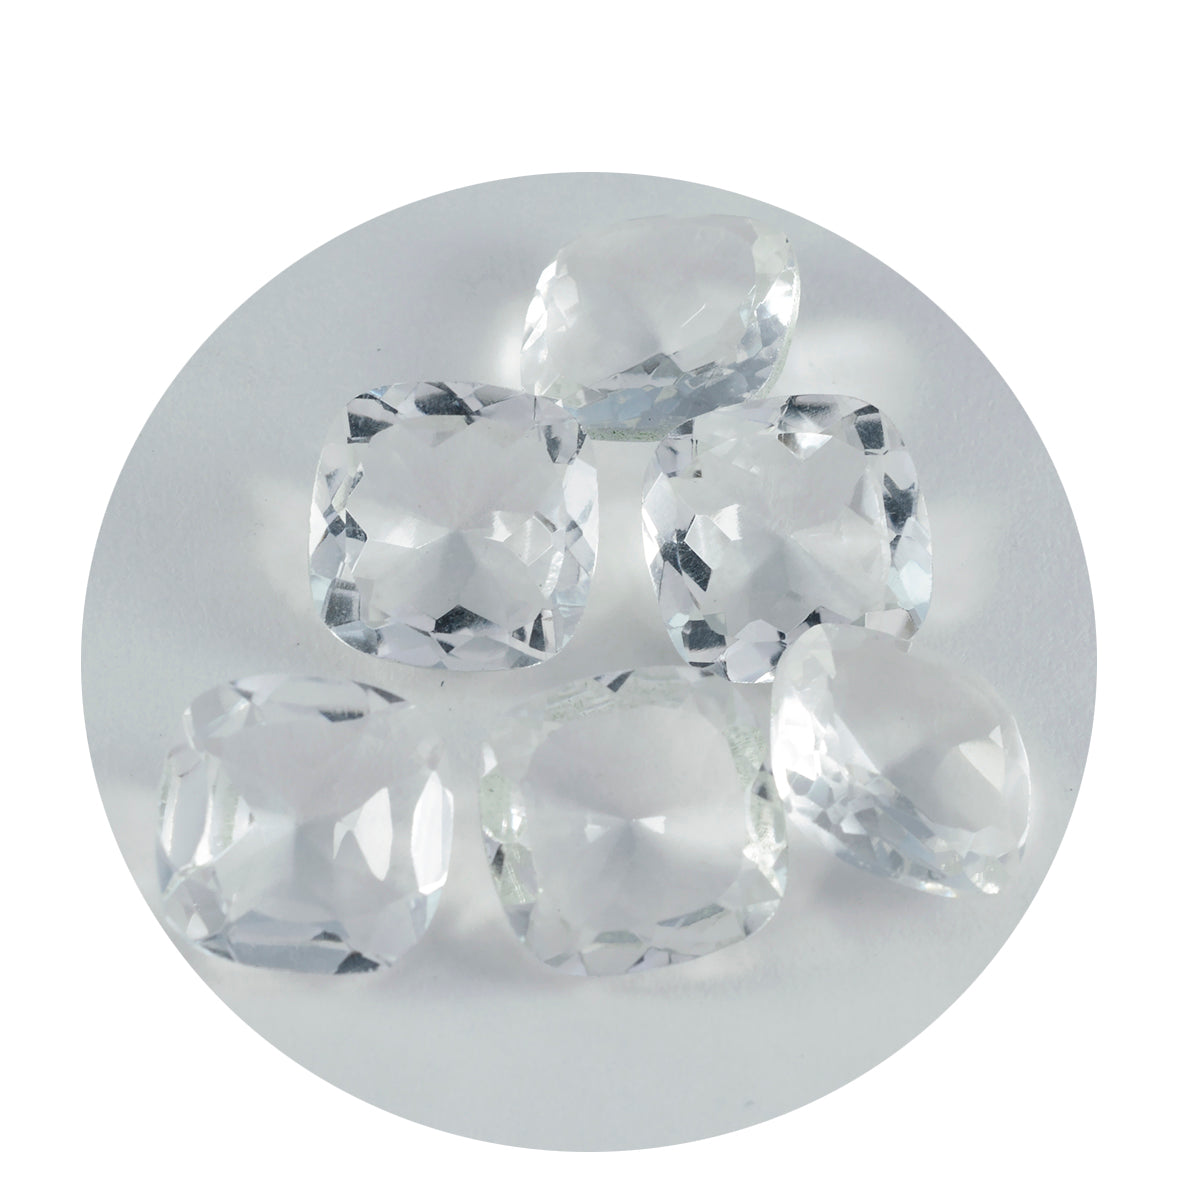 riyogems 1шт белый кристалл кварца ограненный 13х13 мм в форме подушки драгоценные камни удивительного качества